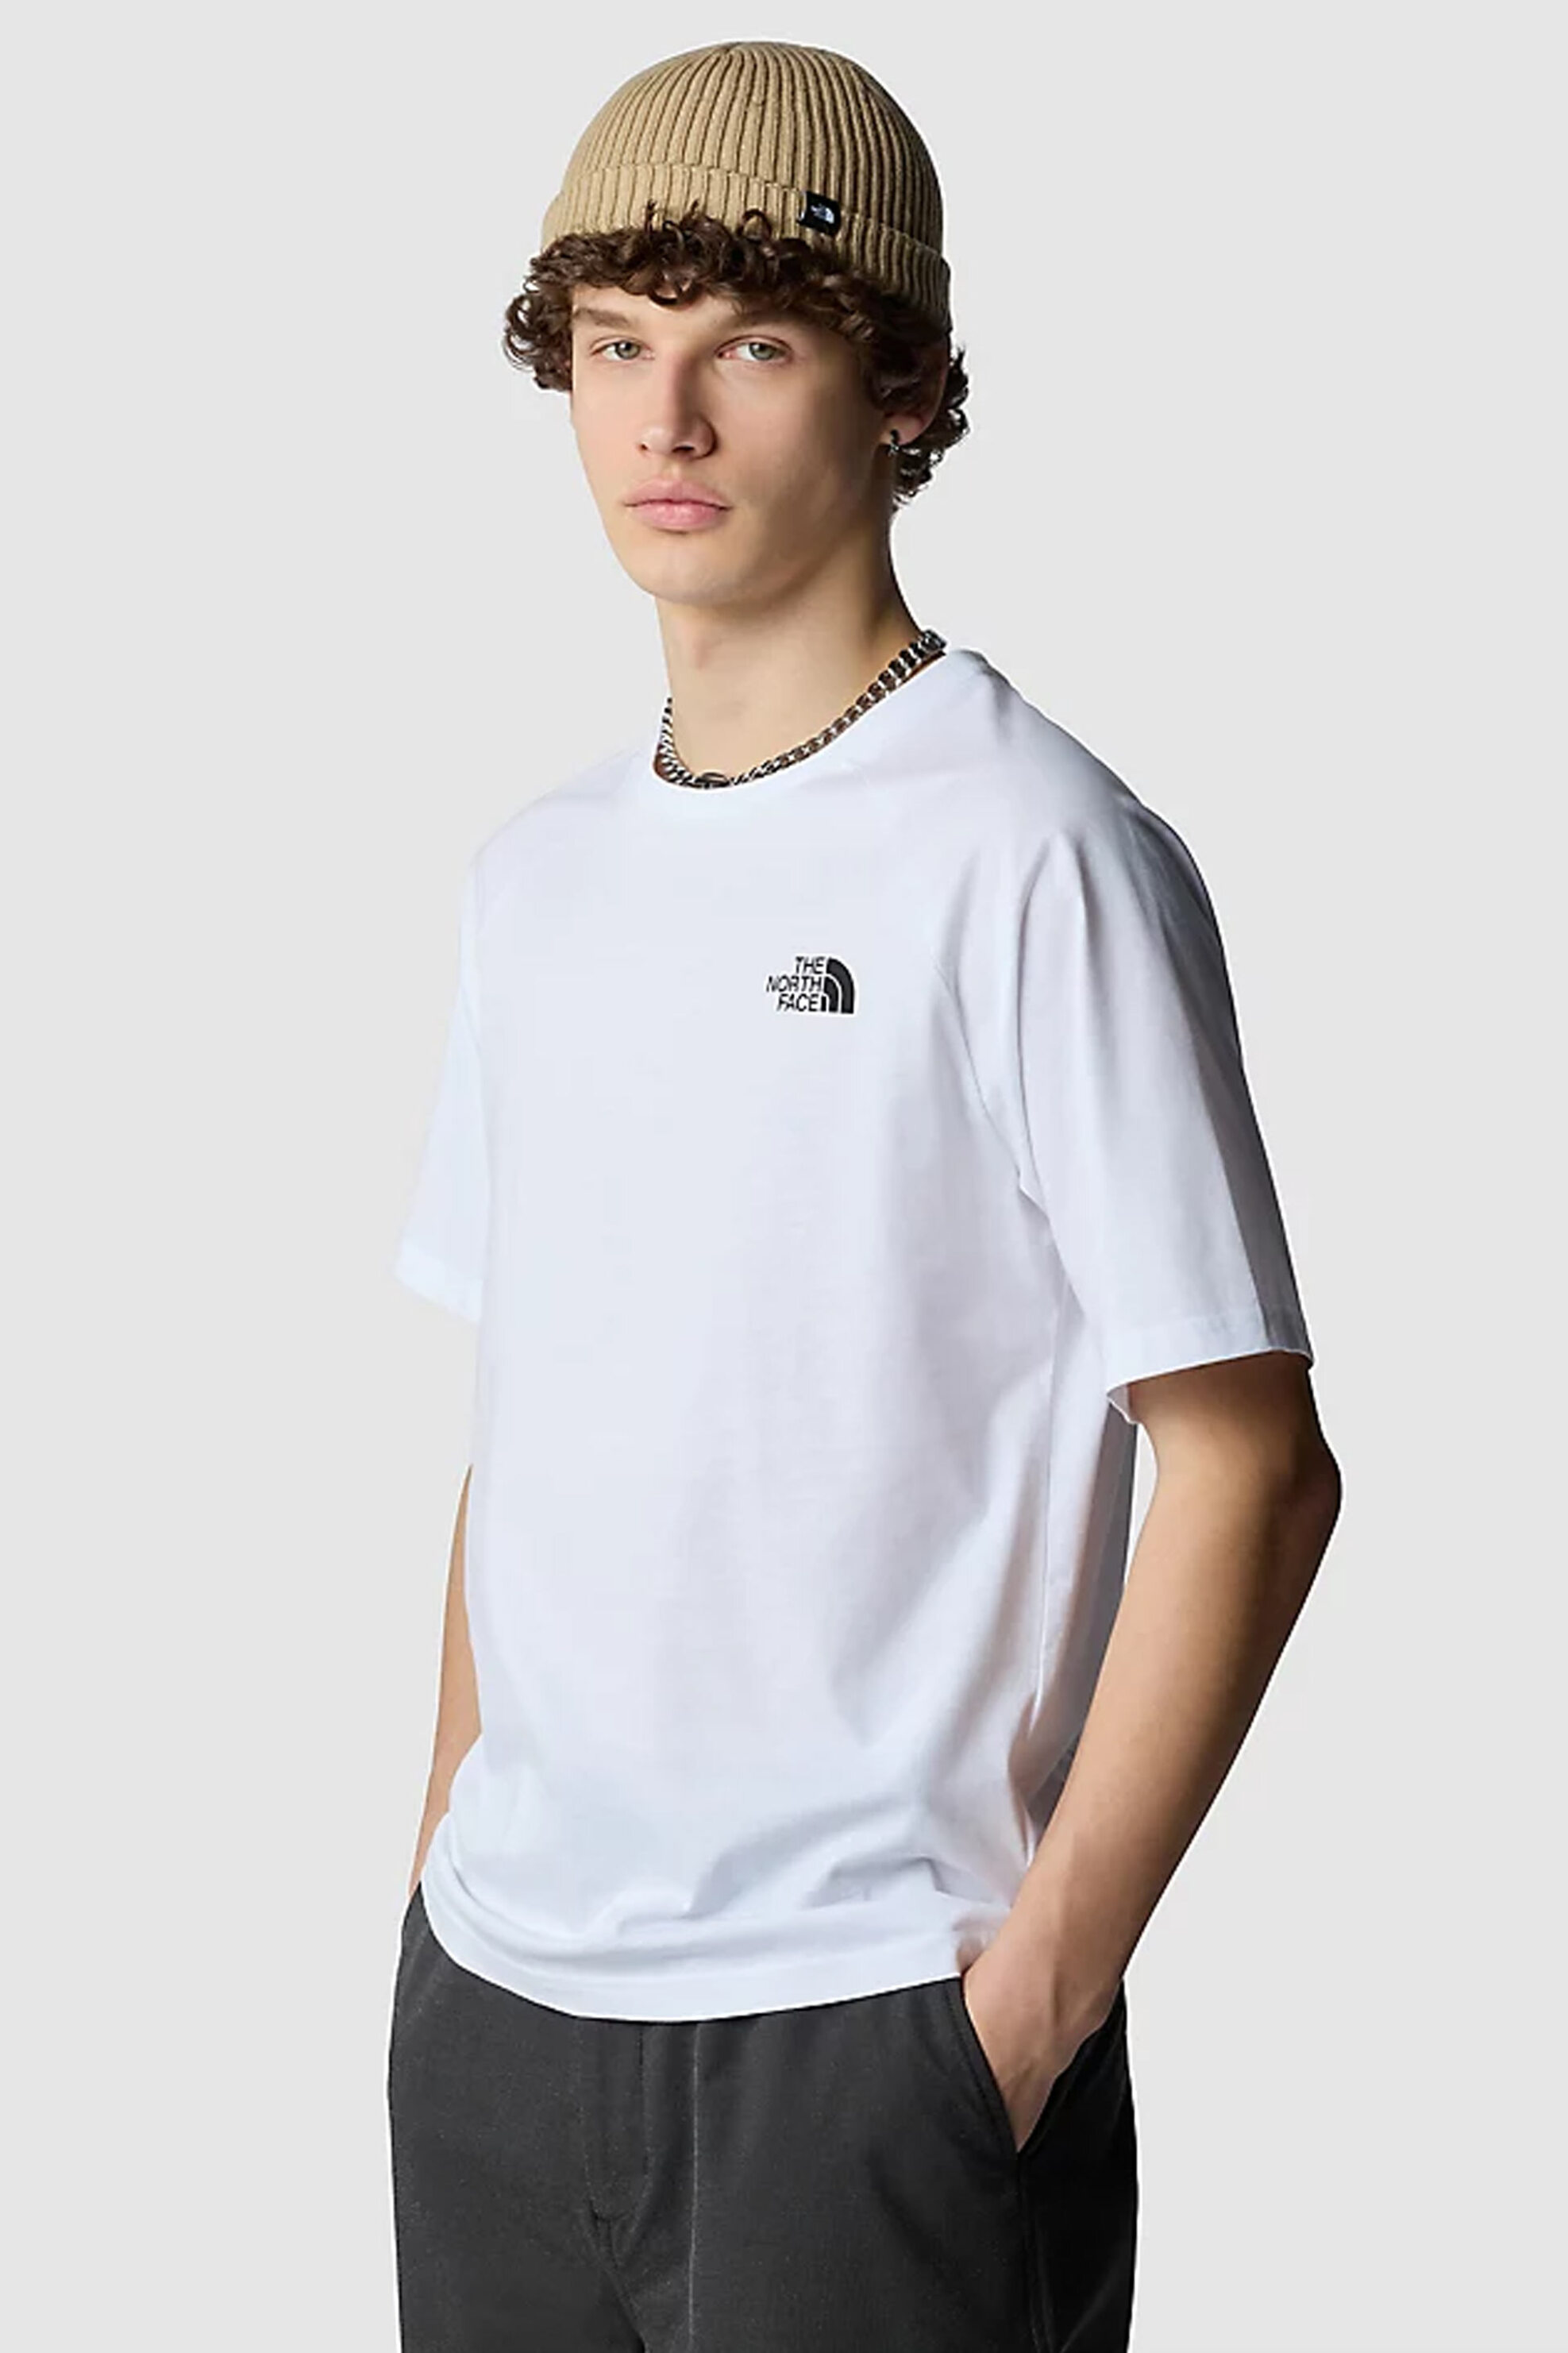 Ανδρική Μόδα > Ανδρικά Ρούχα > Ανδρικές Μπλούζες > Ανδρικά T-Shirts The North Face ανδρικό βαμβακερό T-shirt μονόχρωμο με πολύχρωμο print στην πλάτη "North Faces" - NF0A87NUFN41 Λευκό